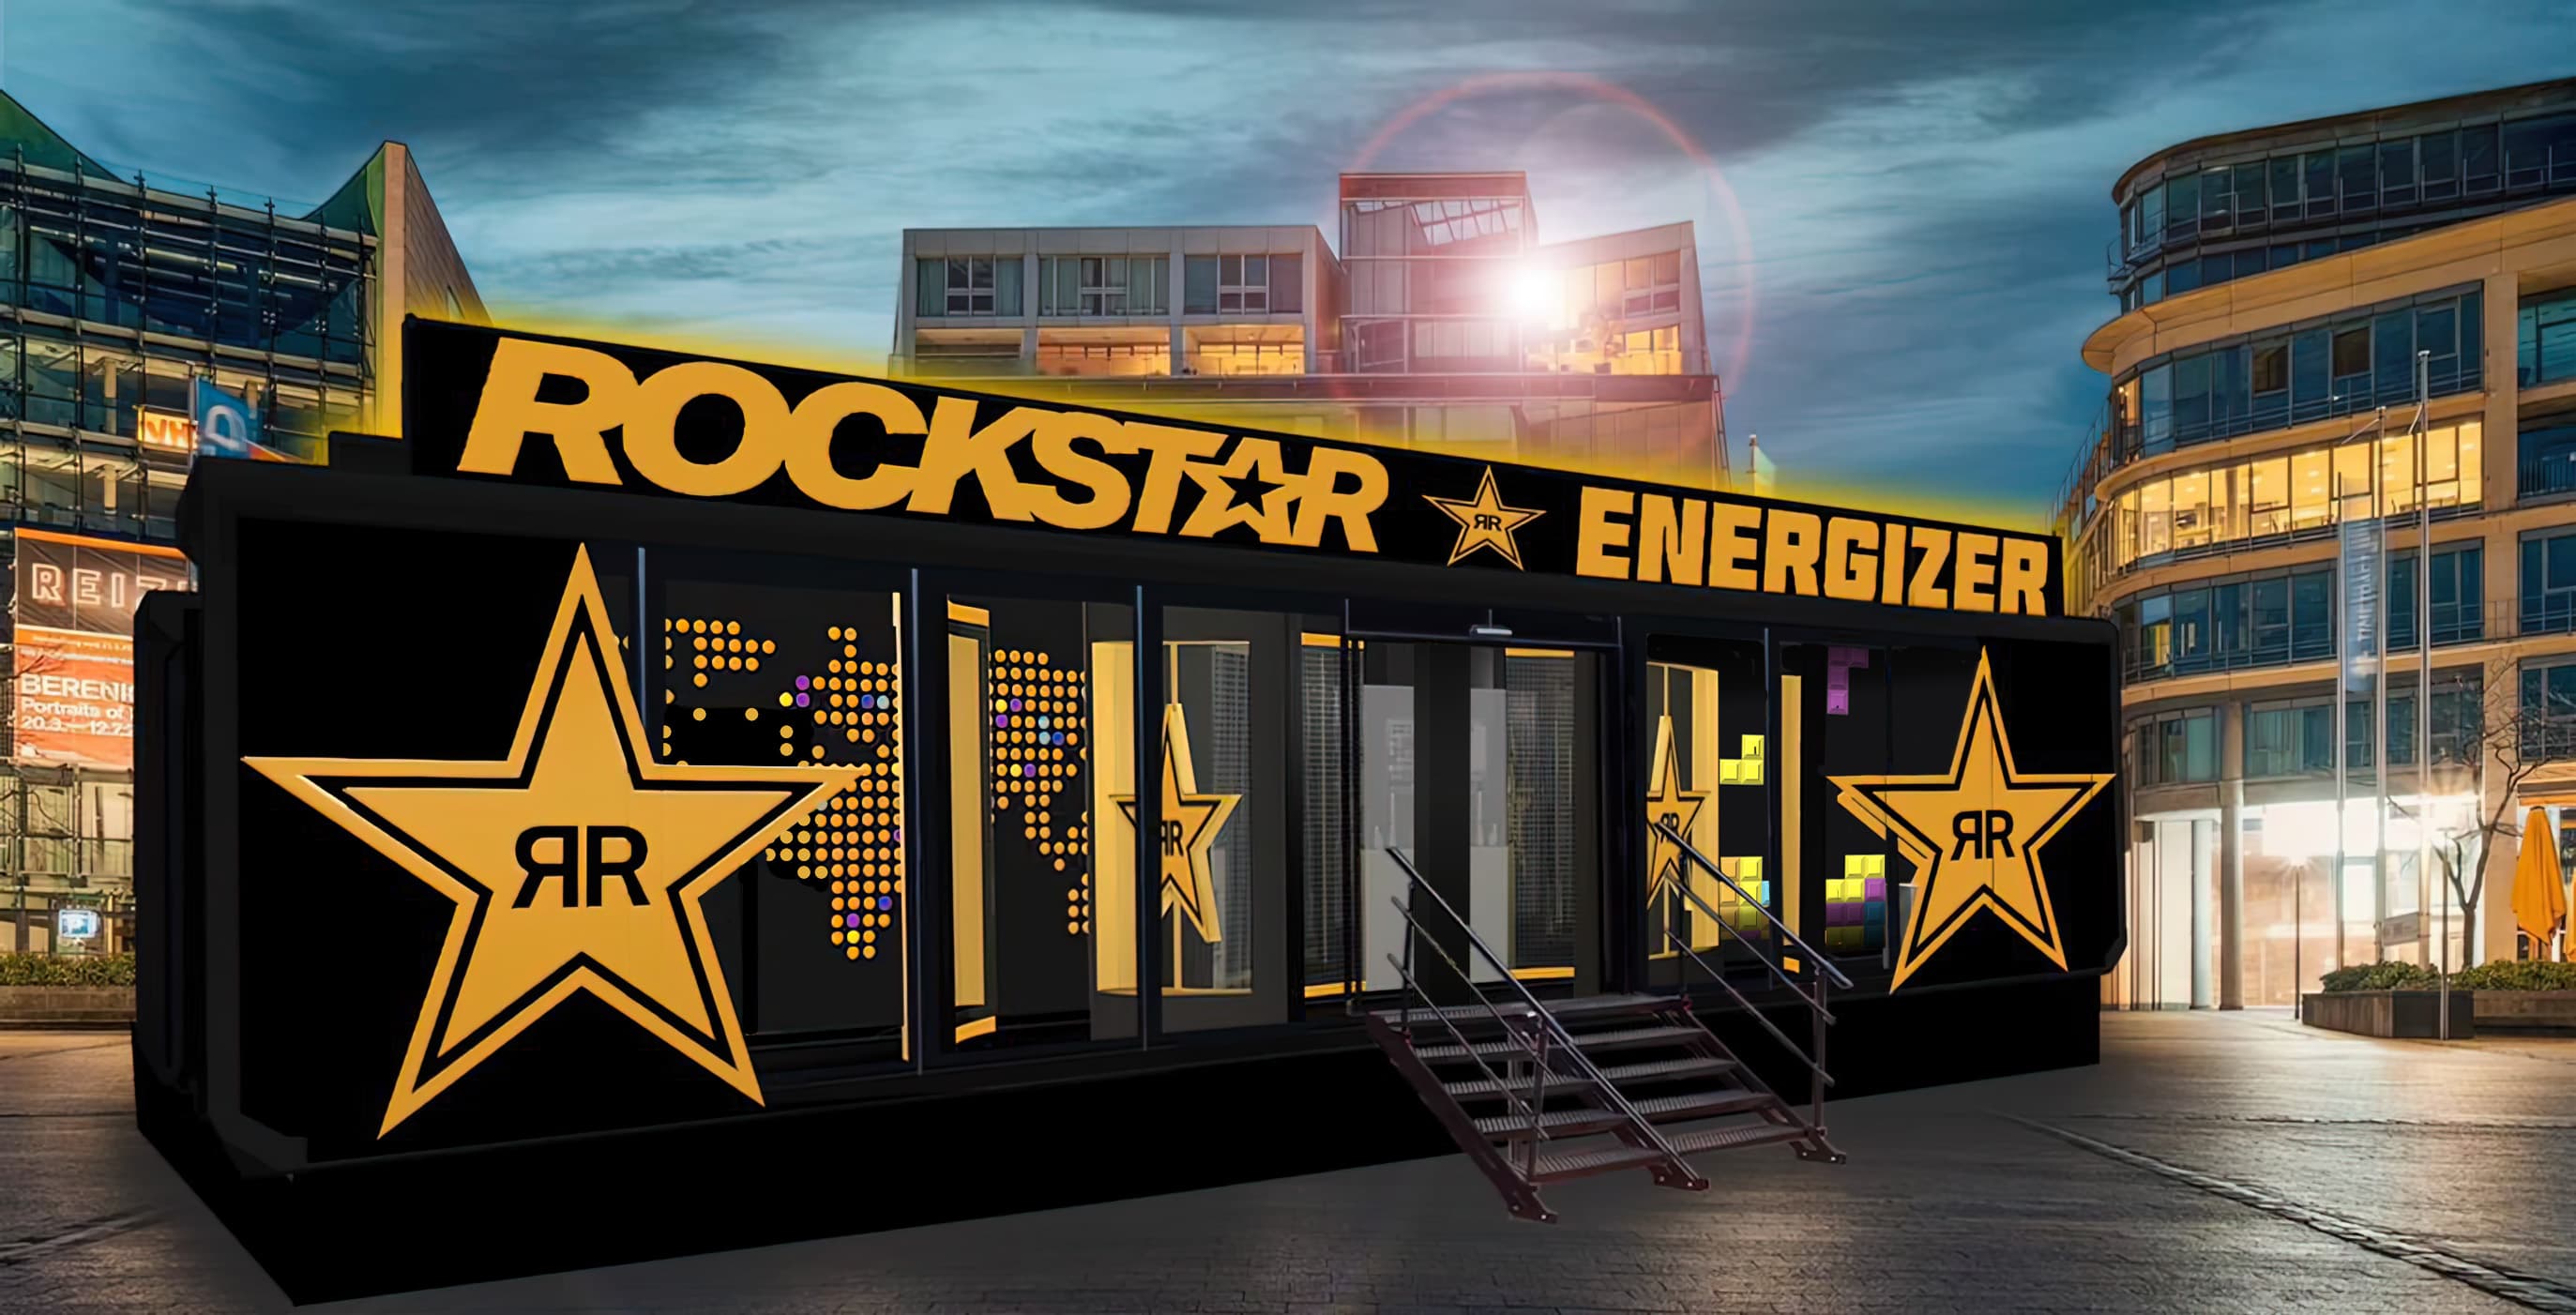 Rockstar Energy x KÖLN! Lade deine Energie im Rockstar Energizer auf!